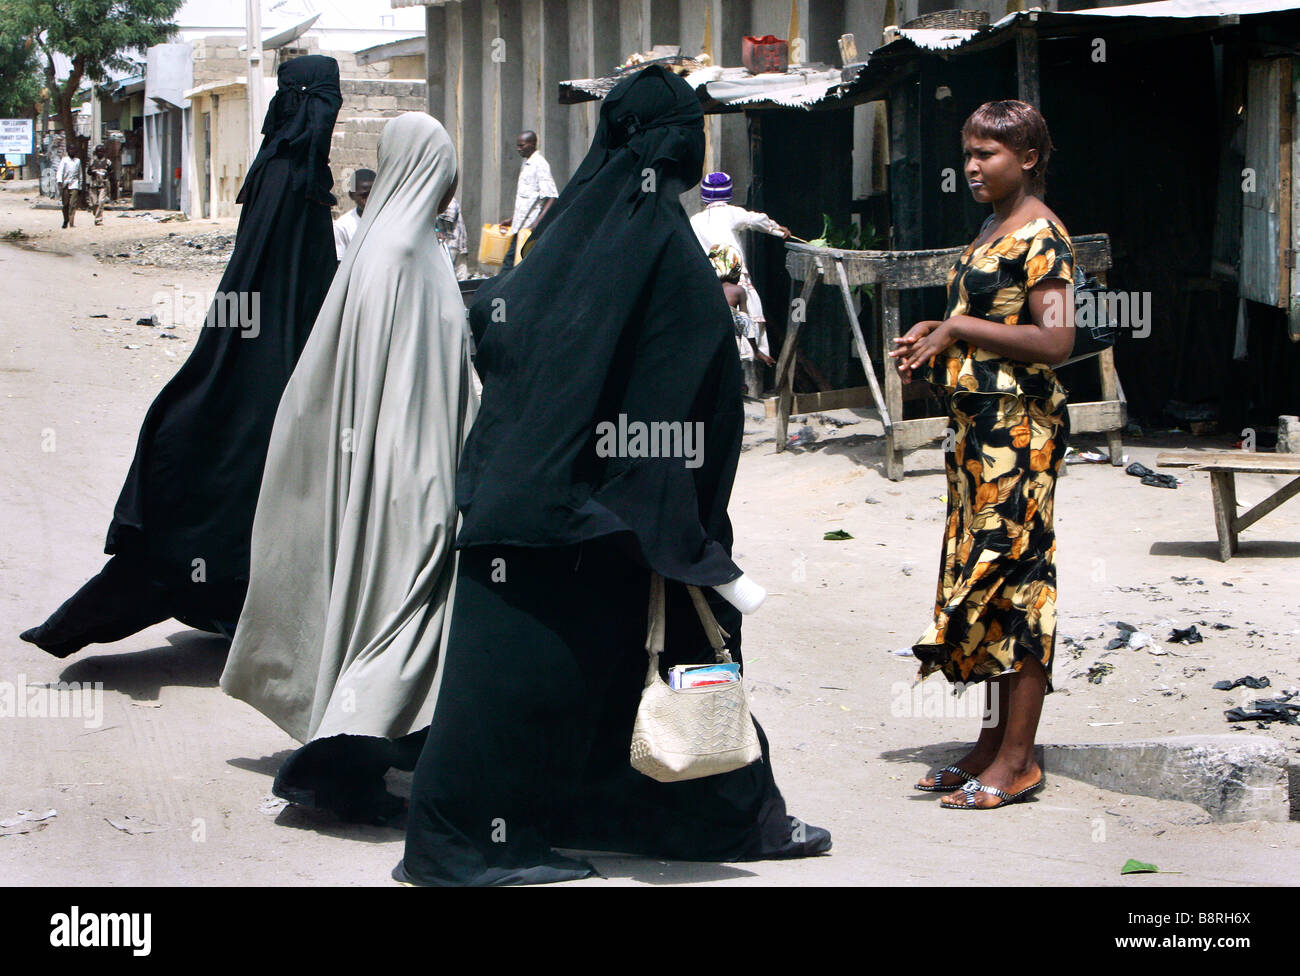 Un escéptico moderno busca vestidos mujer cristiana mirando a mujeres musulmanas llevando una burka de cuerpo completo. Estado de Borno, Maiduguri, Nigeria Foto de stock